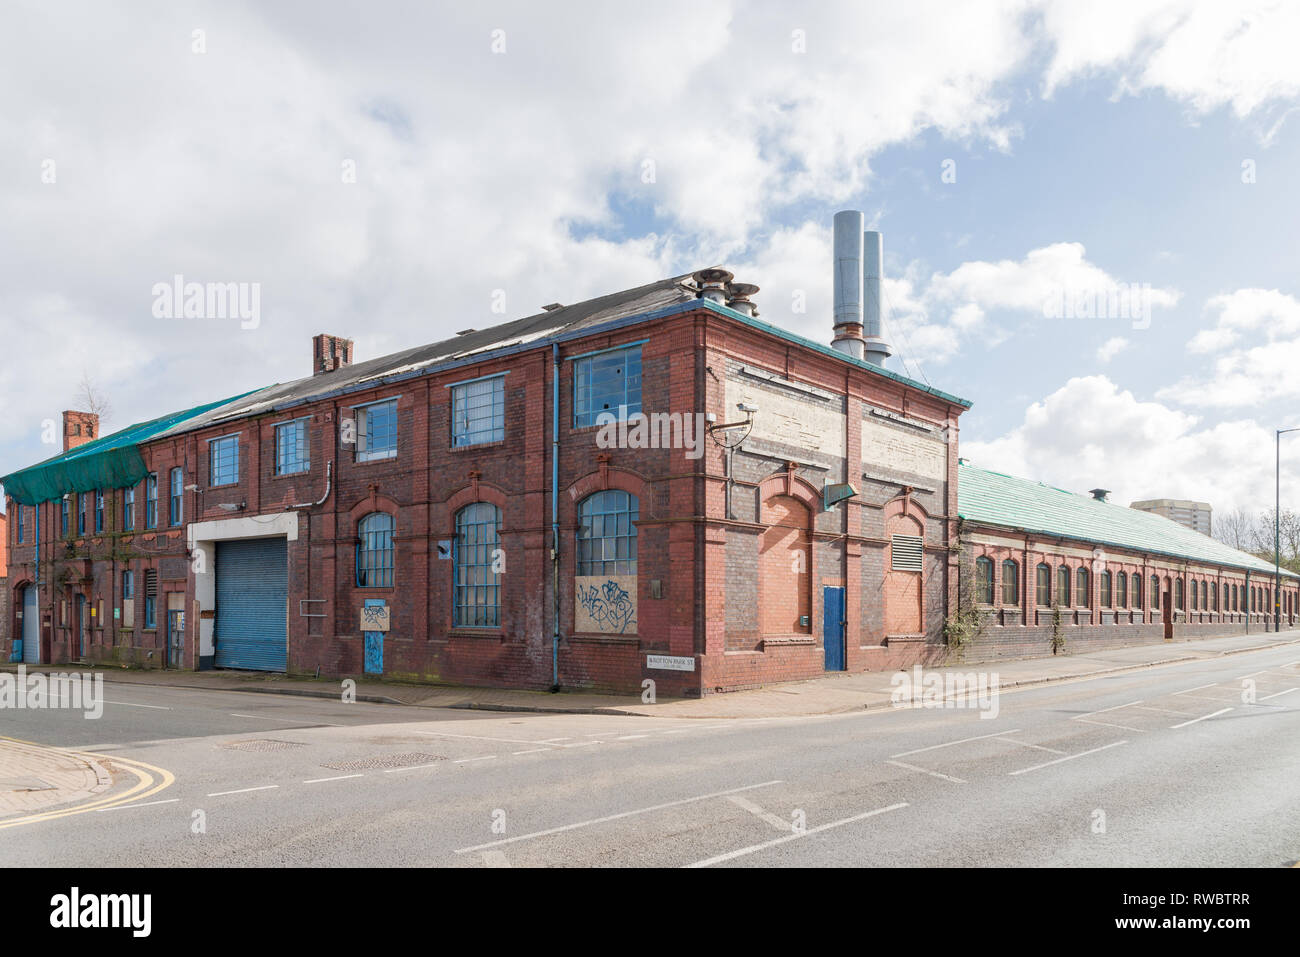 Port-Loop ein neues Gehäuse Stadterneuerung Projekt auf alten Industrieflächen in Ladywood, eine innere Stadt Bezirk in Birmingham Stockfoto